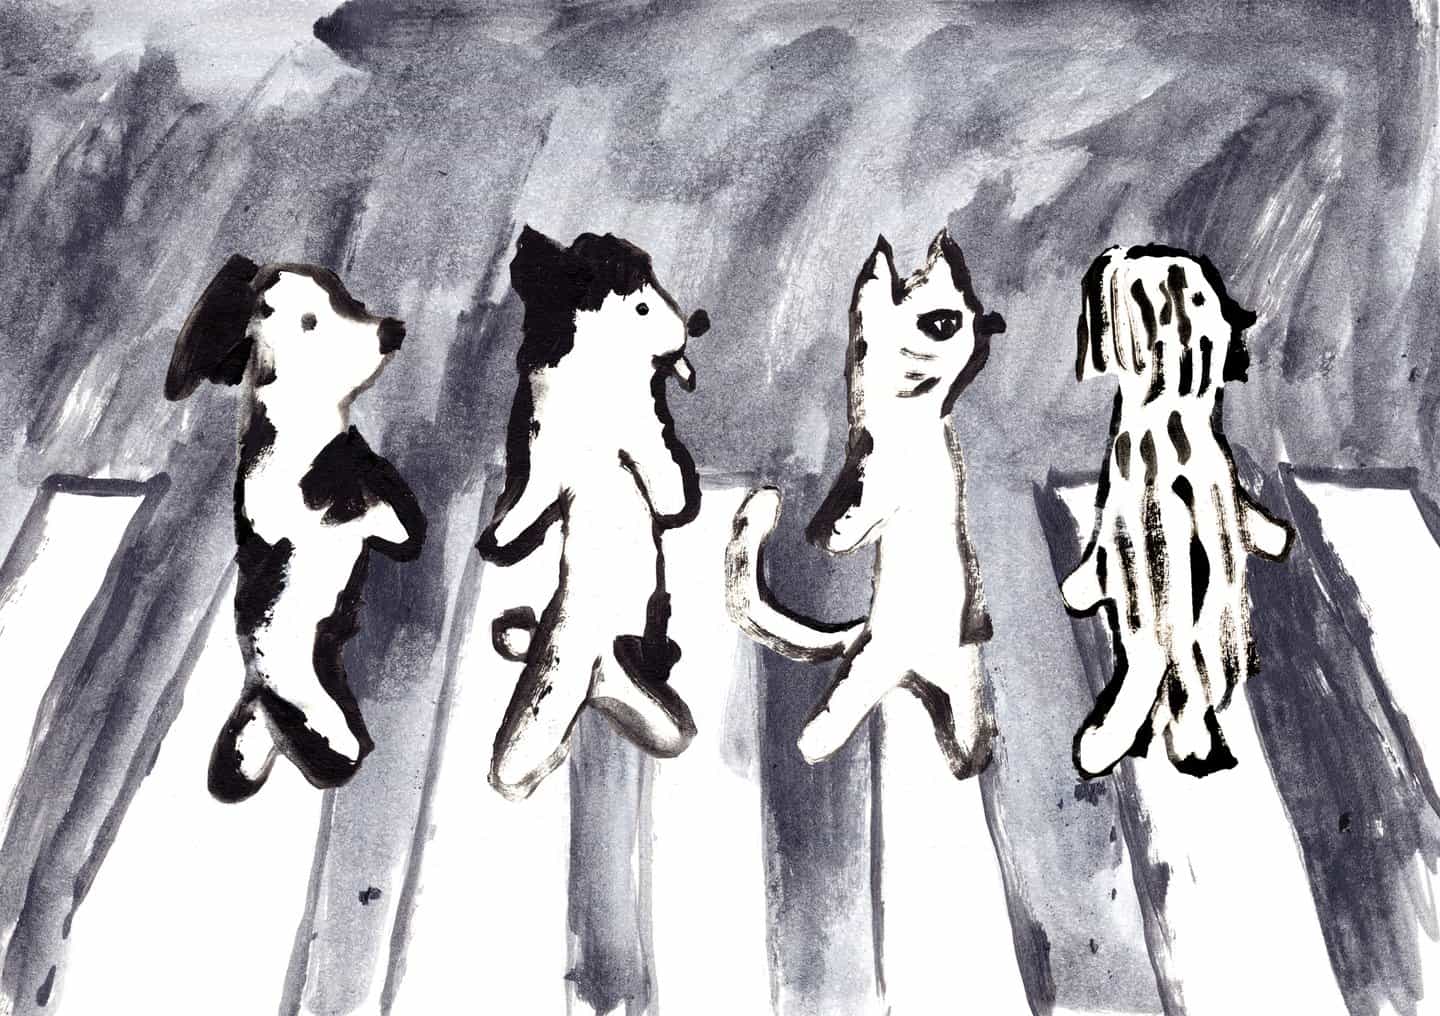 Wei Hsuan Chen: Cats and dogs on Abbey (Copyright © Wei Hsuan Chen)“Cuando se trata de The Beatles, la primera imagen que me viene a la mente es la portada del álbum Abbey Road. Al ver imágenes de sus actuaciones durante ciertos períodos, puedes sentir cuánto se divirtieron y cuánto disfrutaron de la música. A pesar de los diferentes desafíos que la banda enfrentó en diferentes etapas, no se puede negar que dejaron atrás numerosas obras musicales atemporales, y el espíritu rockero de The Beatles continúa influyendo en generaciones.